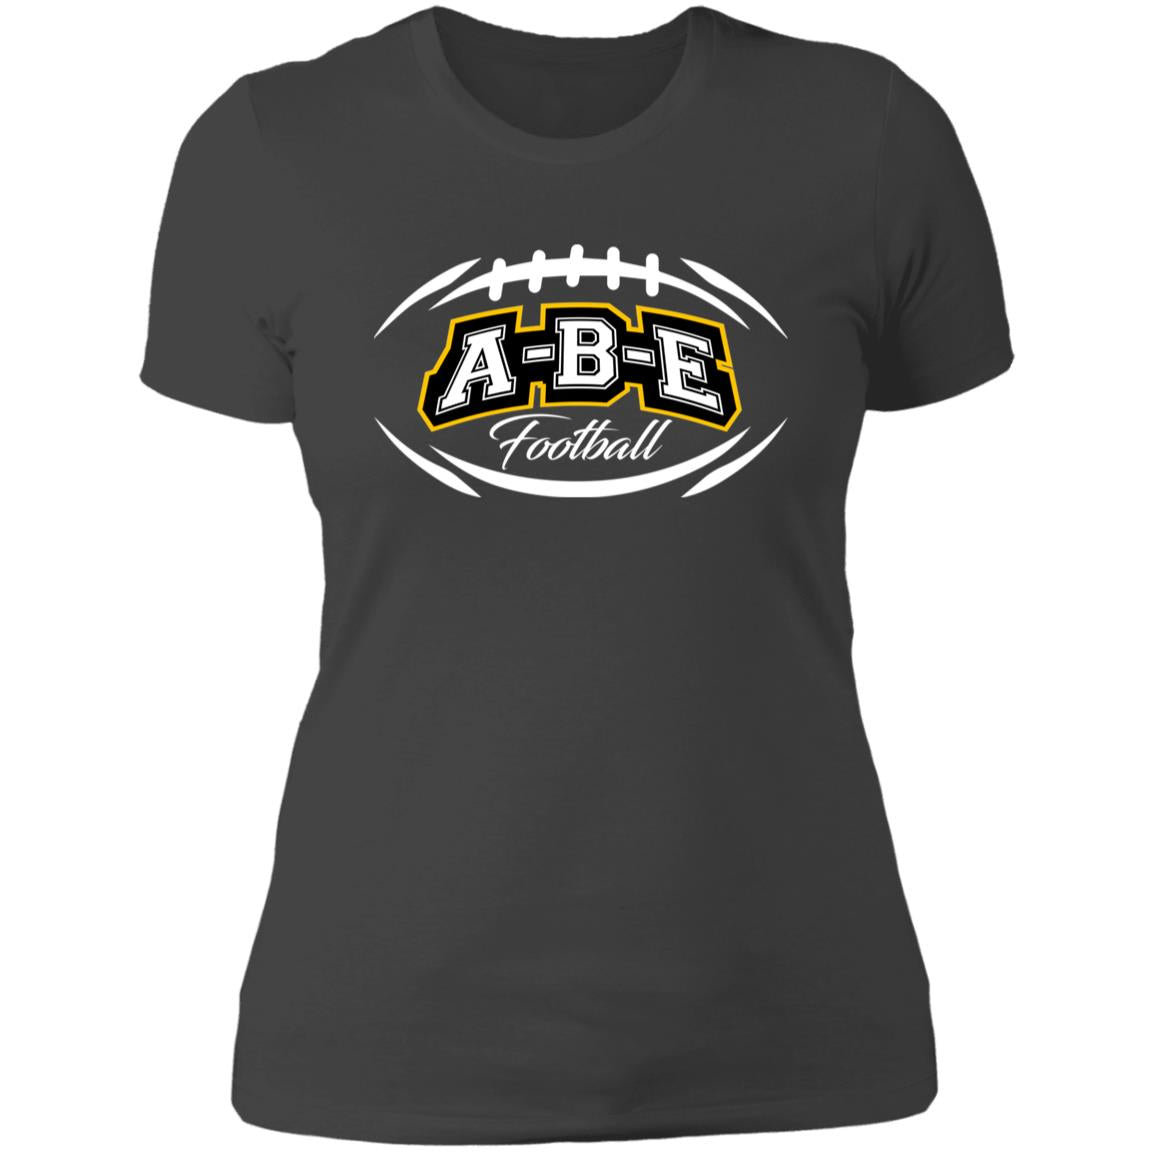 A-B-E Football - Ladies' Boyfriend T-Shirt